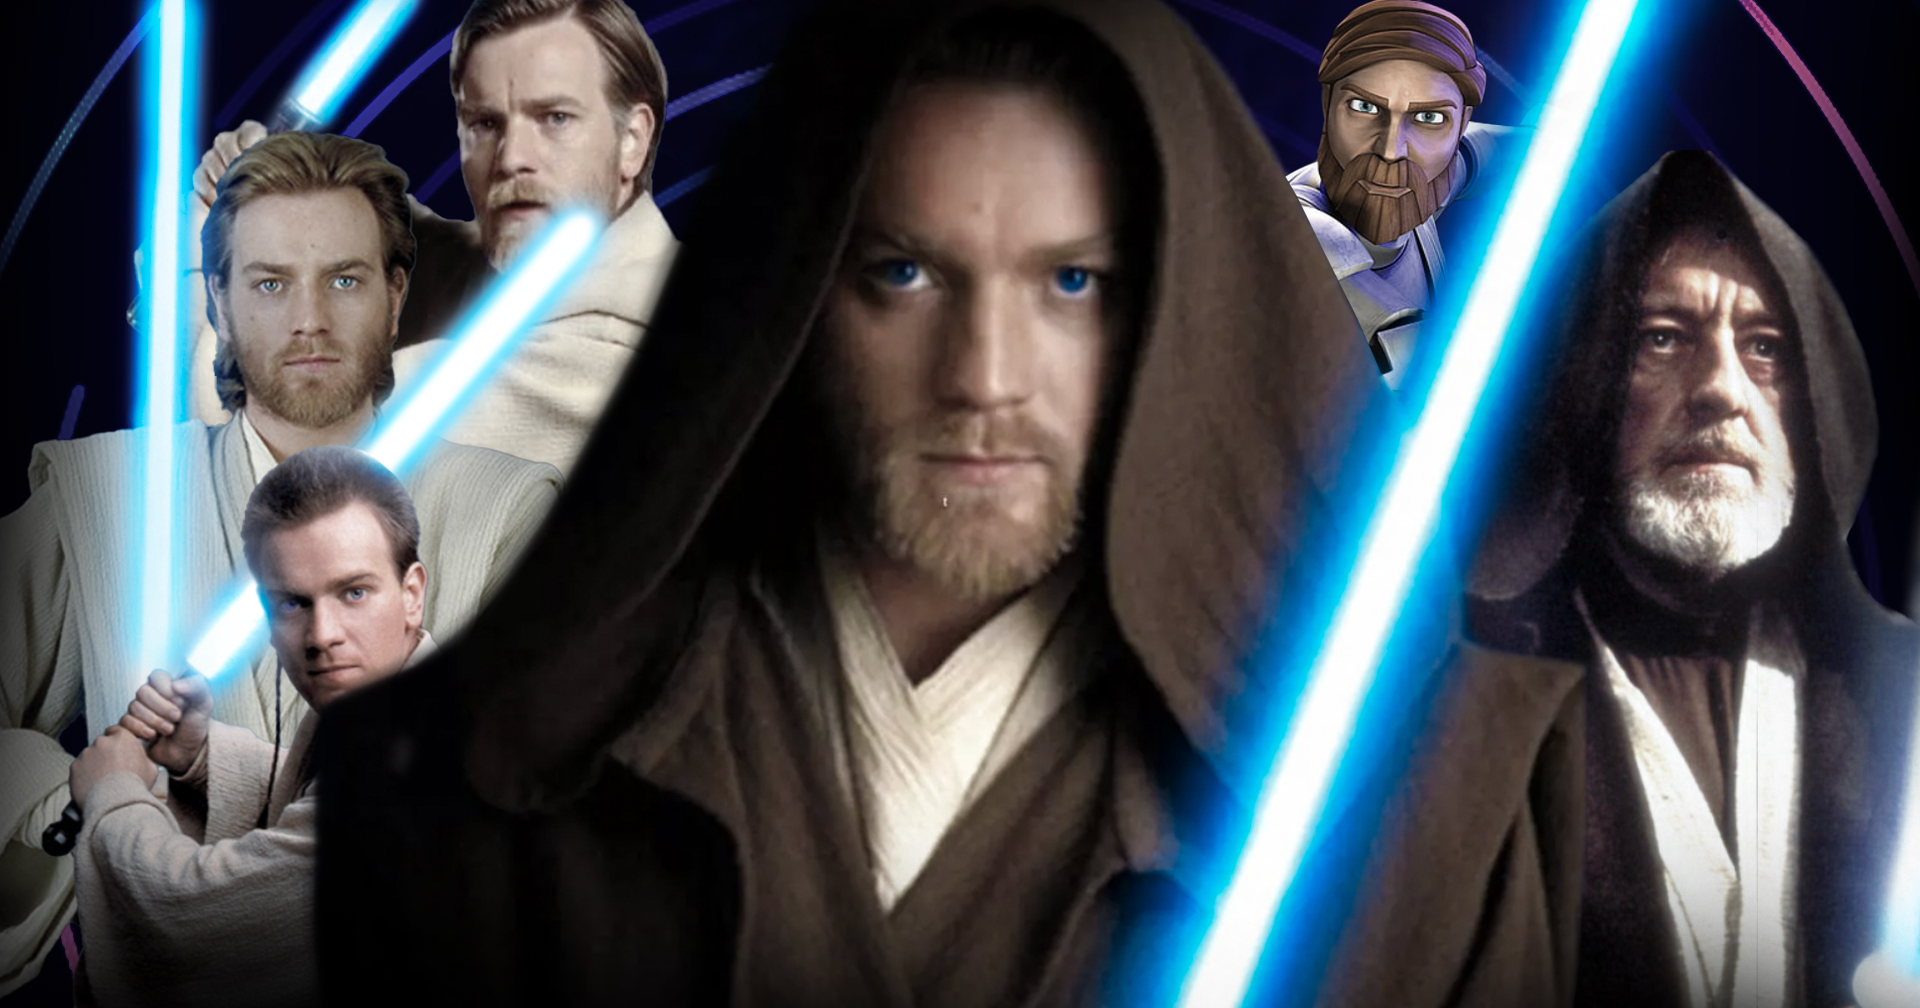 ทำความรู้จัก Obi-Wan Kenobi ก่อนดูซีรีส์ Star Wars Obi-Wan Kenobi